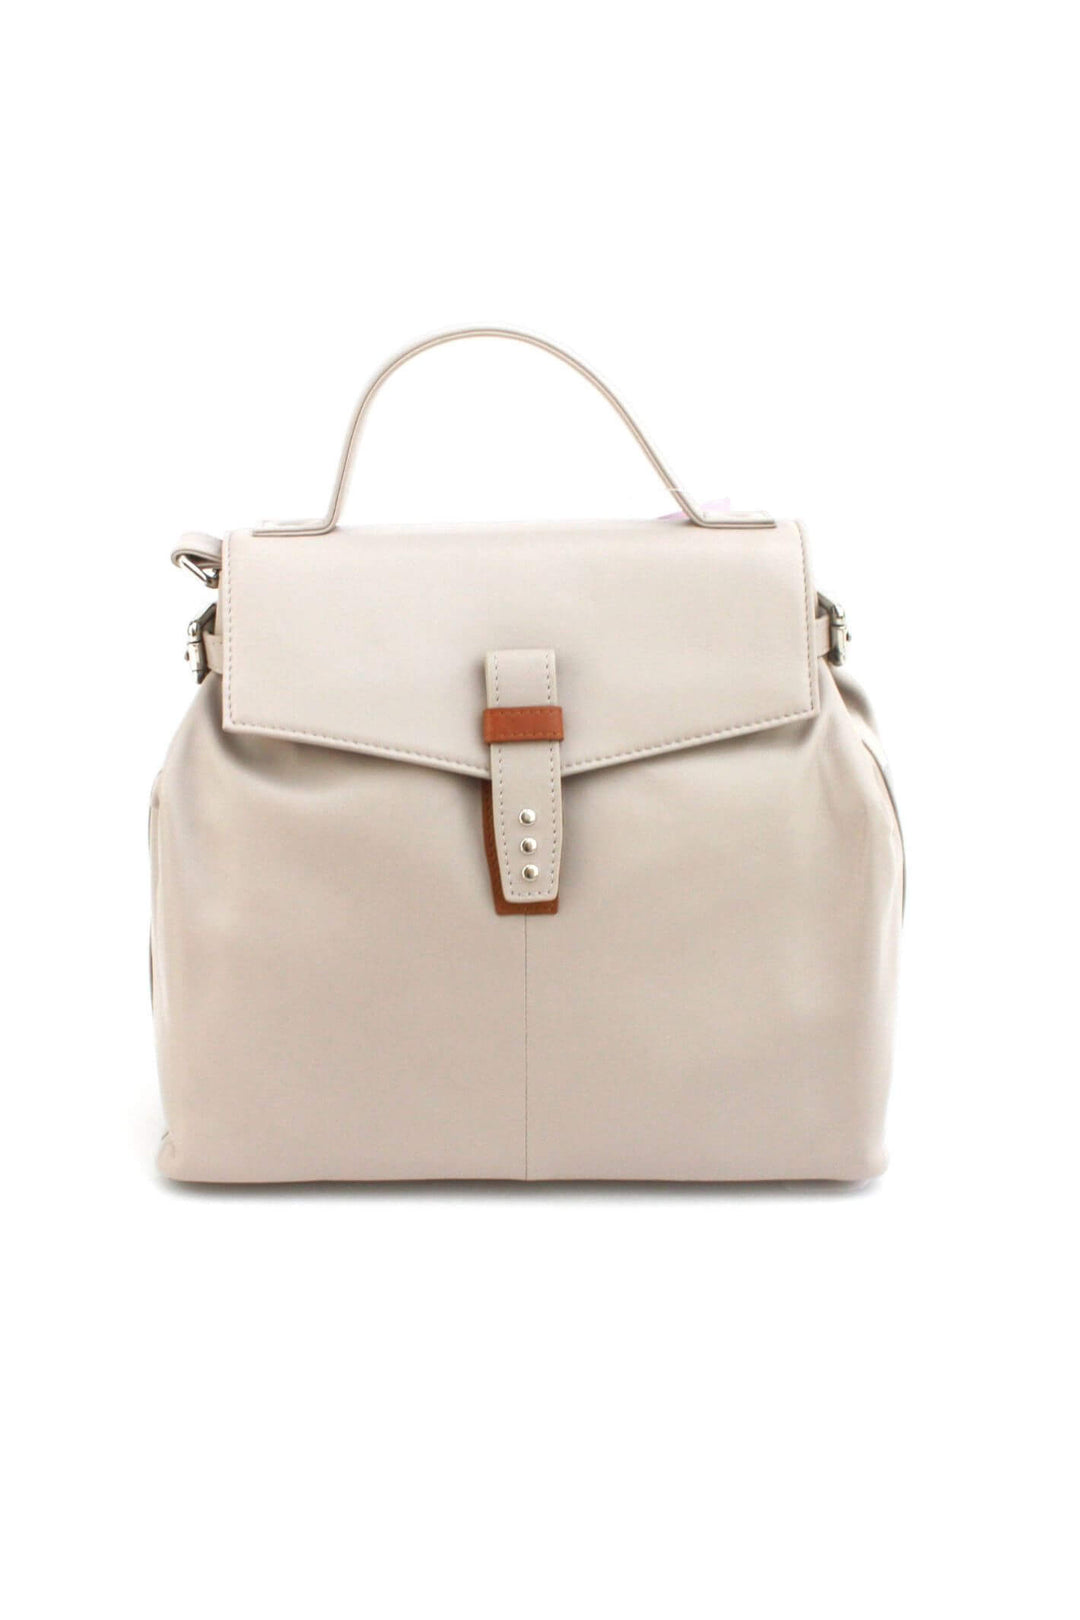 Ivory Leather Katrina Handbag